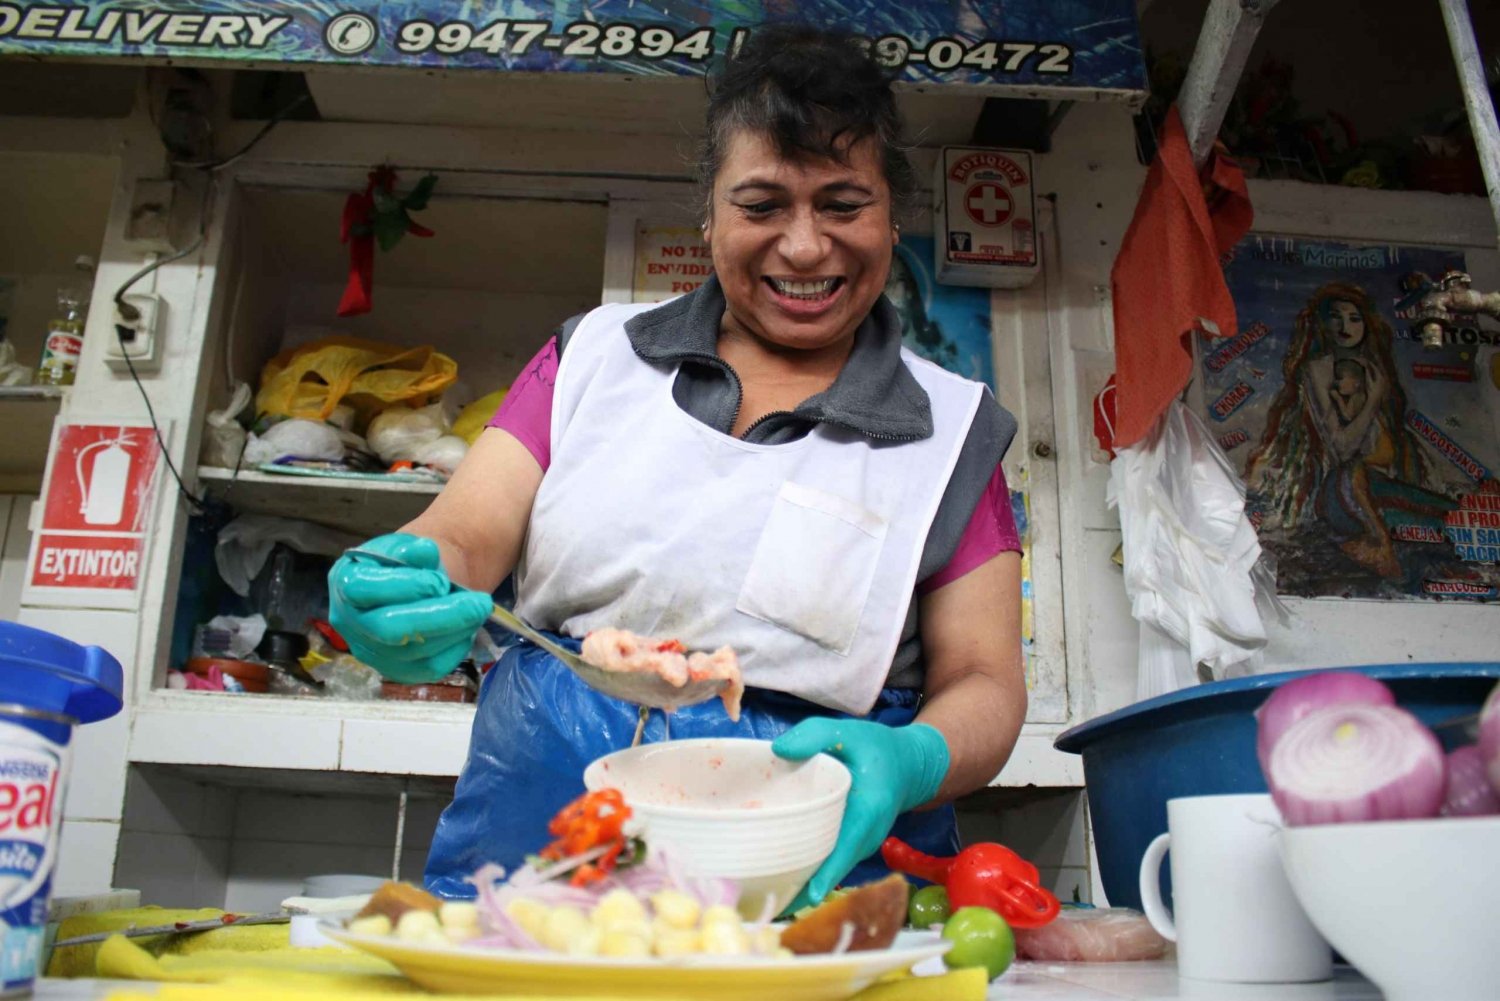 Matrundtur i Lima med lokala marknader och besök i Barranco